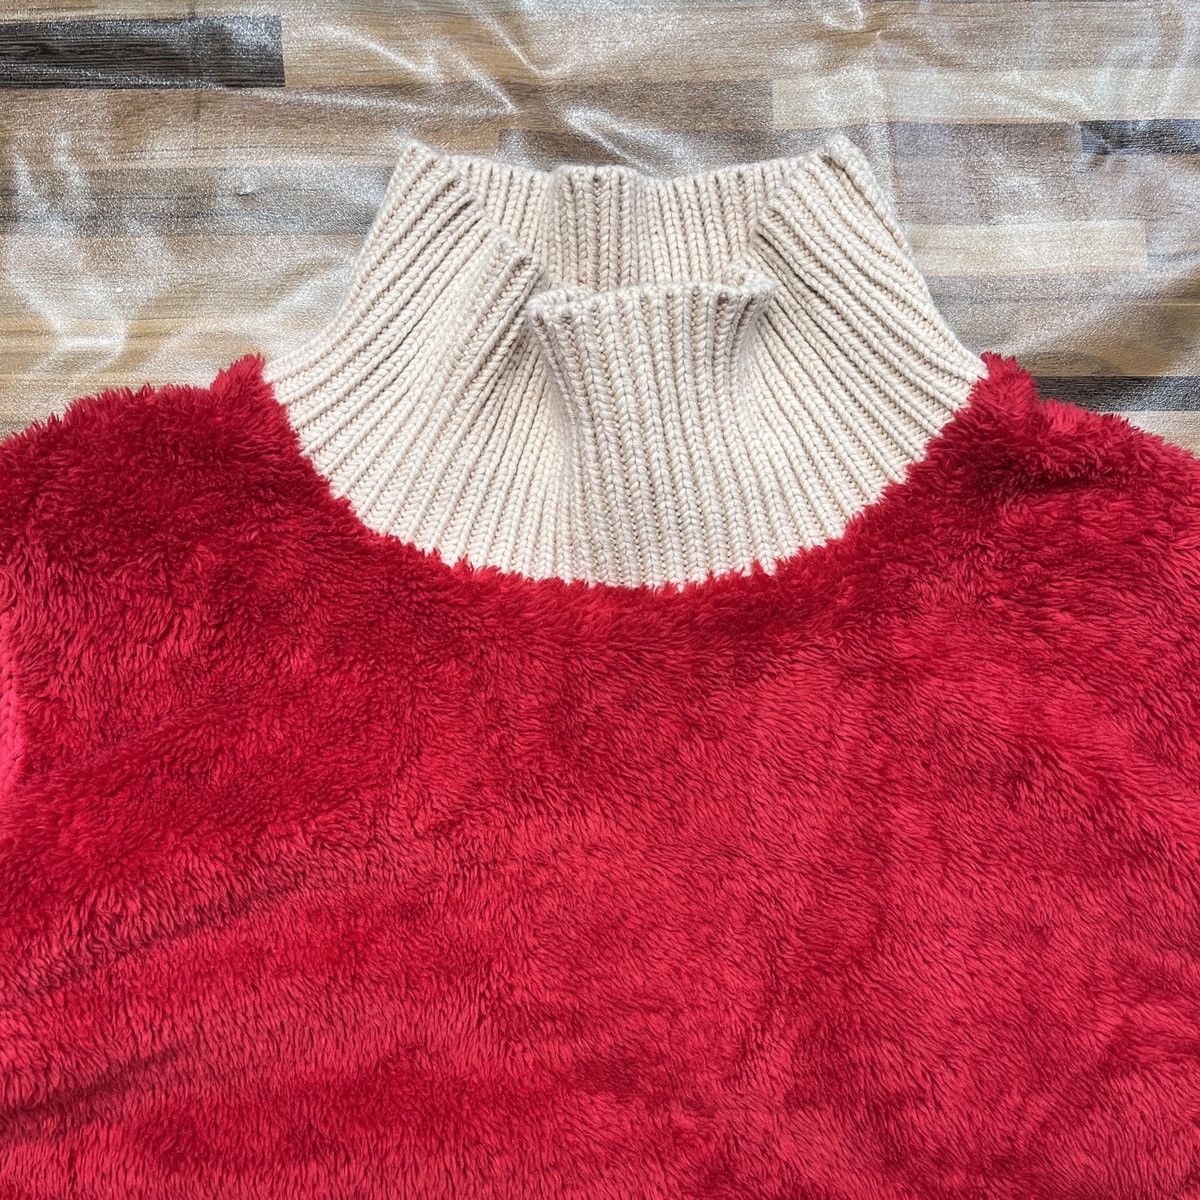 Undercover X Uniqlo Sweater Rare Red Colour - 7